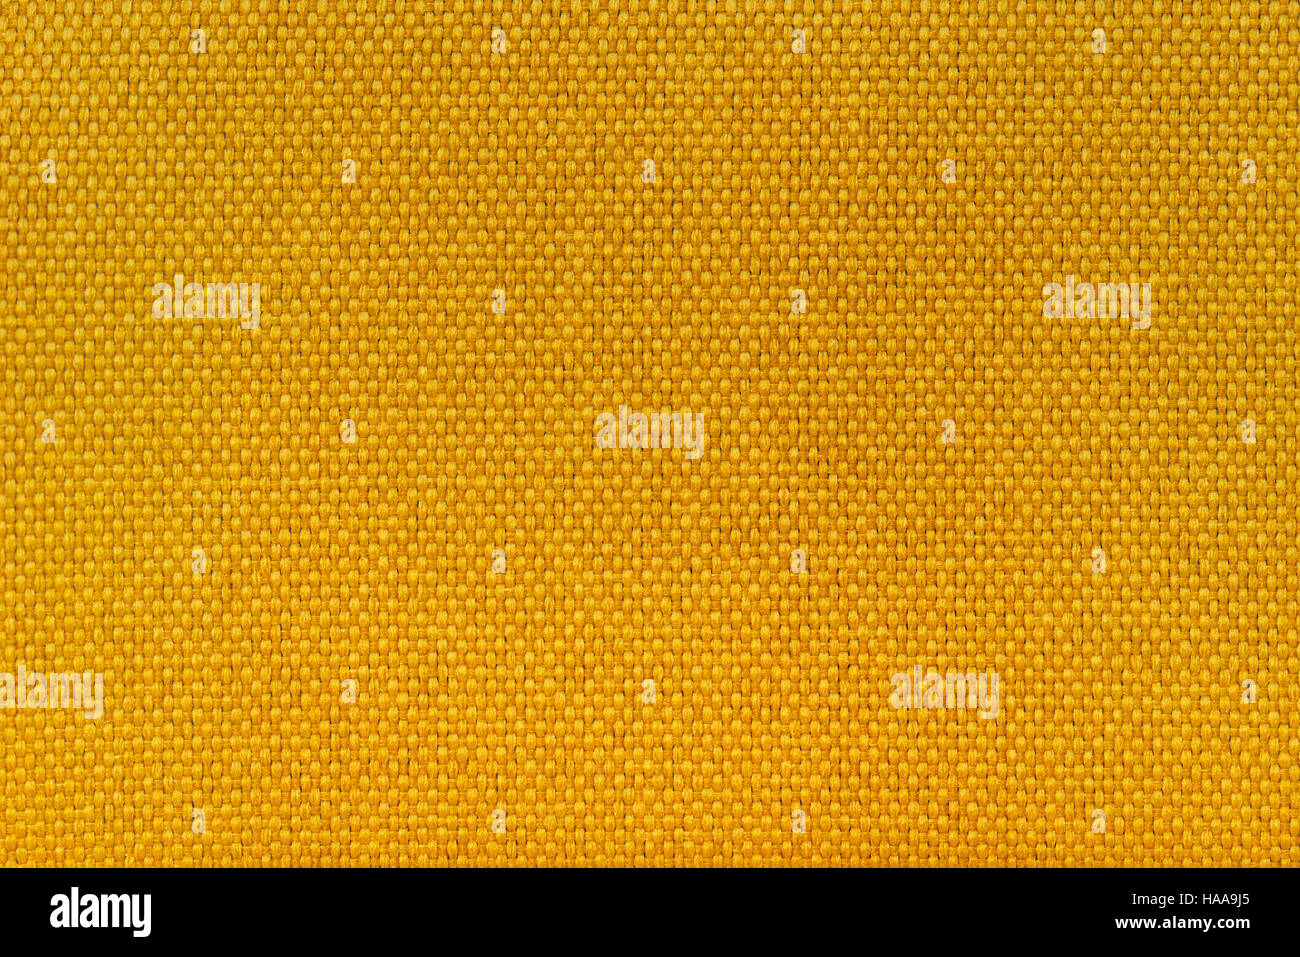 Fibre jaune matière textile texture, abstract background Banque D'Images